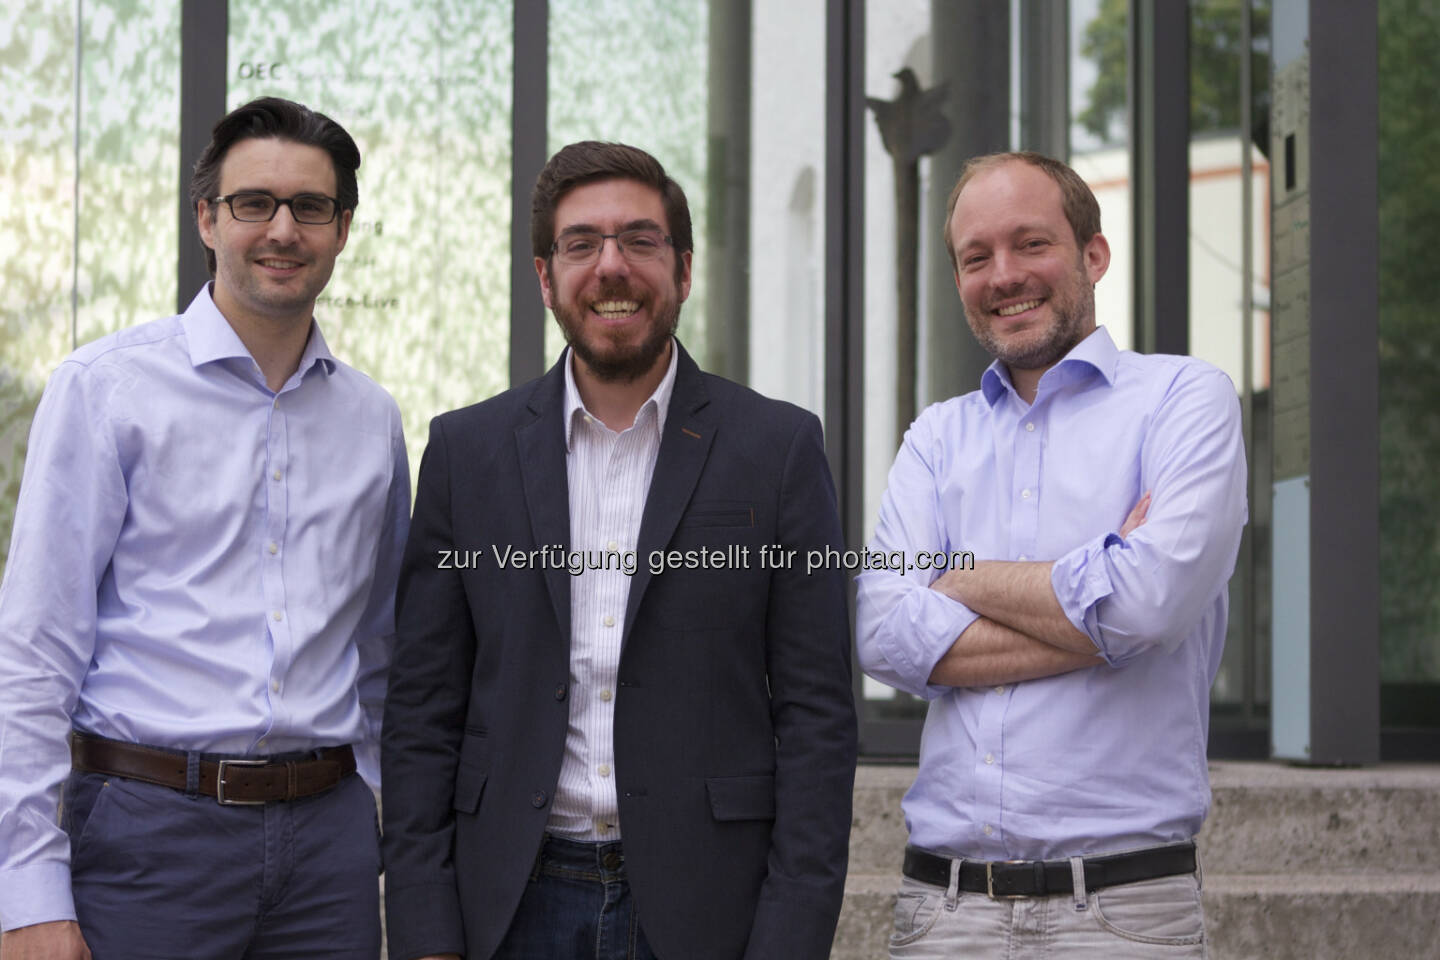 Oliver Vins, Yassin Hankir und Thomas Bloch bringen mit dem FinTech-Startup vaamo (www.vaamo.de) die einfache Geldanlage für jedermann (c) vaamo